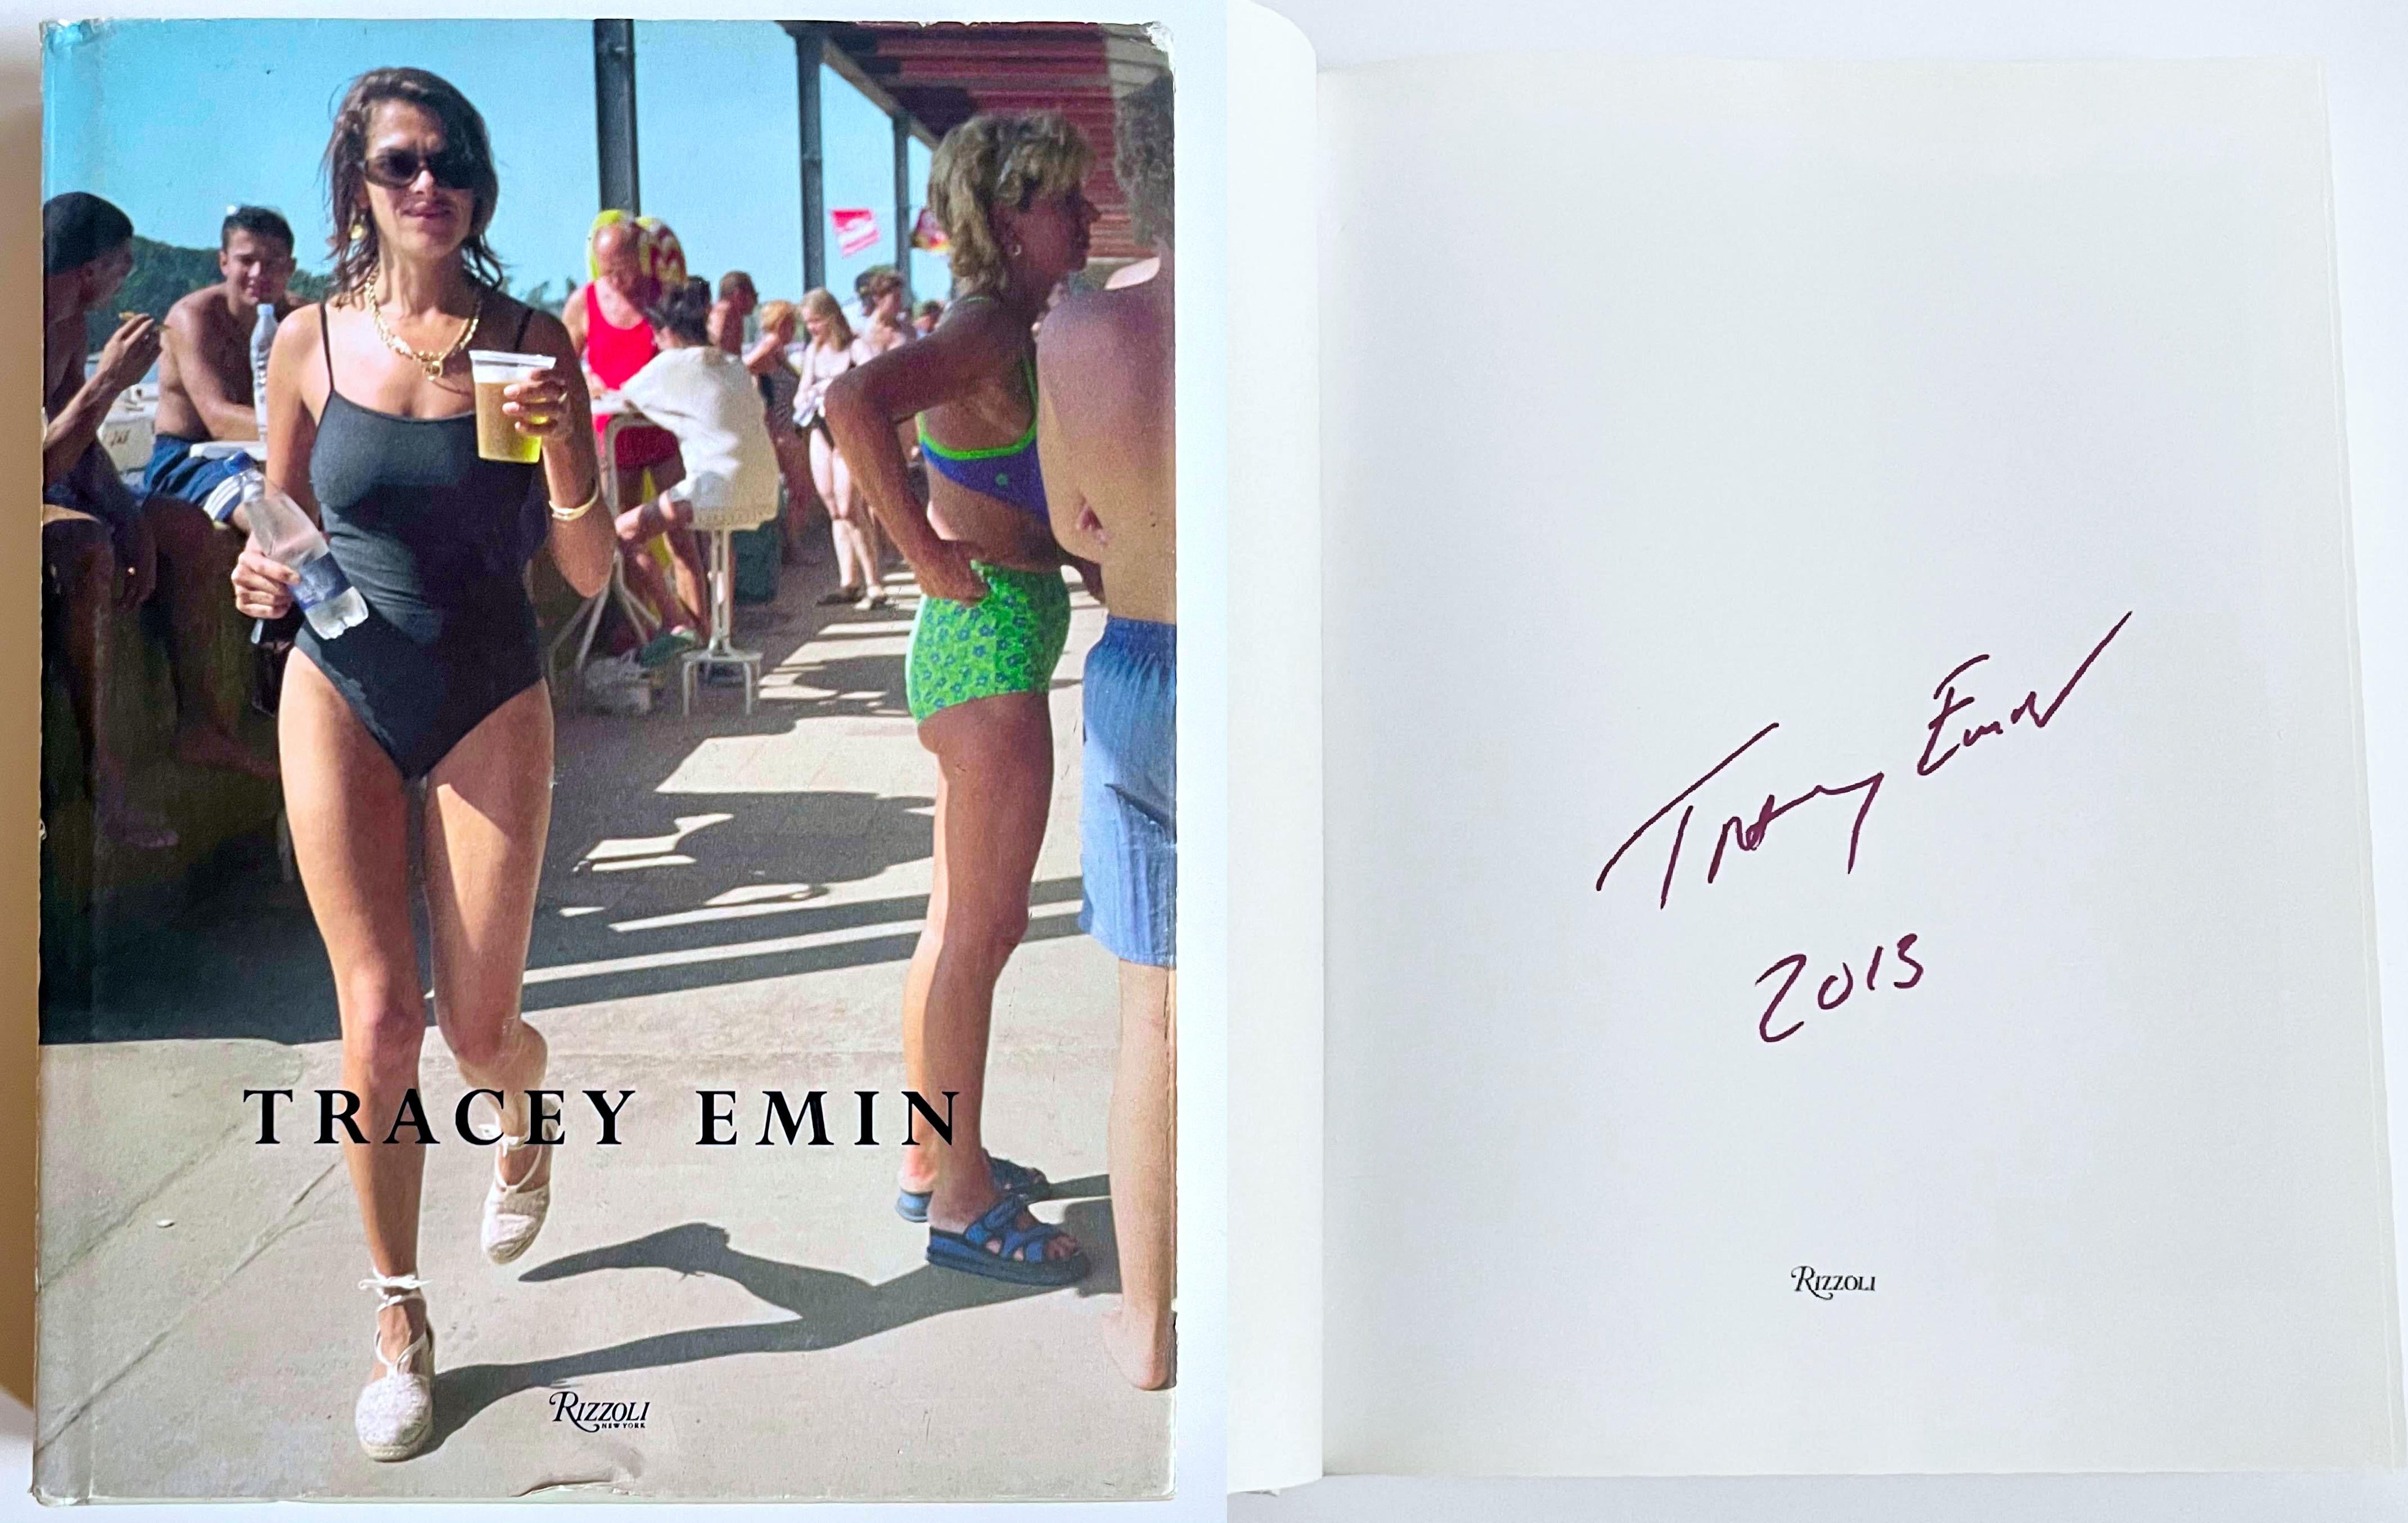 Tracey Emin
Tracey Emin: Werke 1963-2006 (handsigniert und datiert von Tracey Emin), 2006
Gebundene Monografie mit Schutzumschlag (handsigniert und datiert 2013 von Tracey Emin)
Fett signiert und datiert 2013 von Tracey Emin auf der ersten vorderen